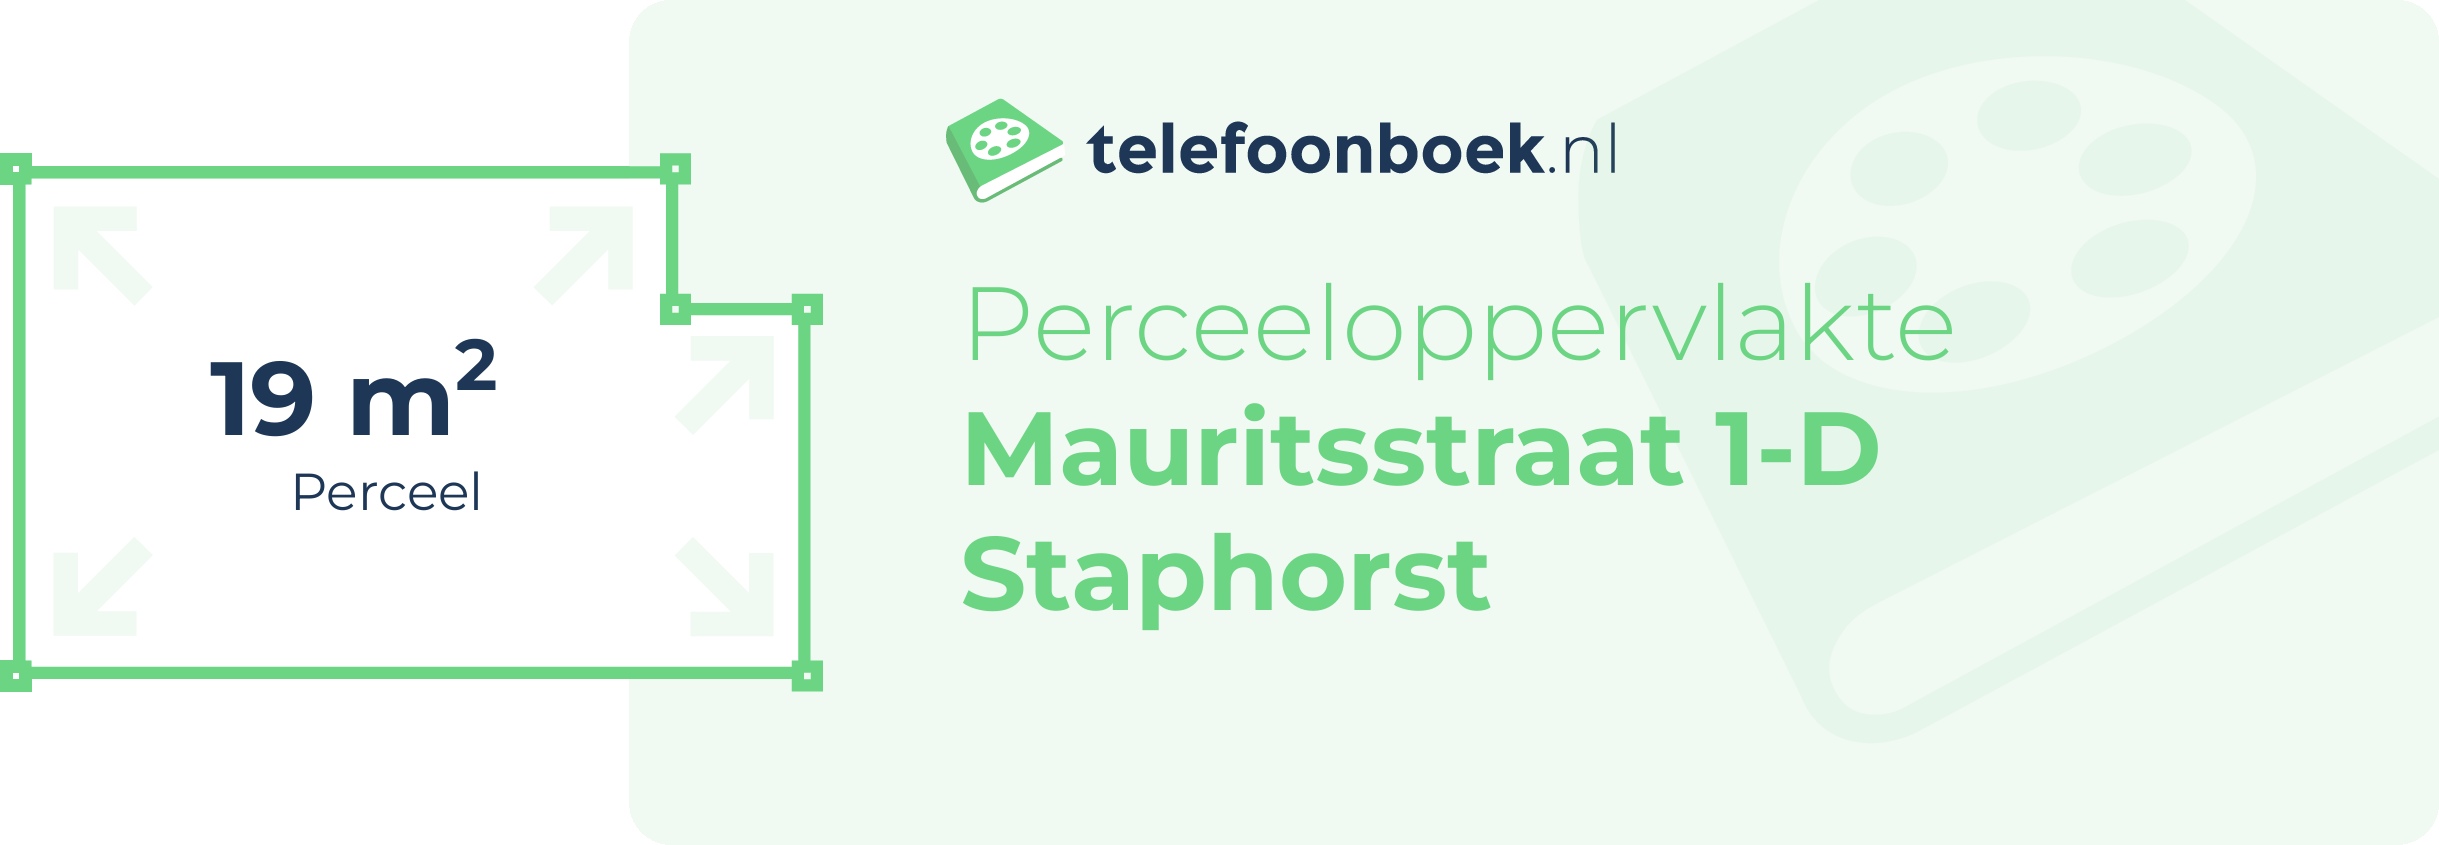 Perceeloppervlakte Mauritsstraat 1-D Staphorst